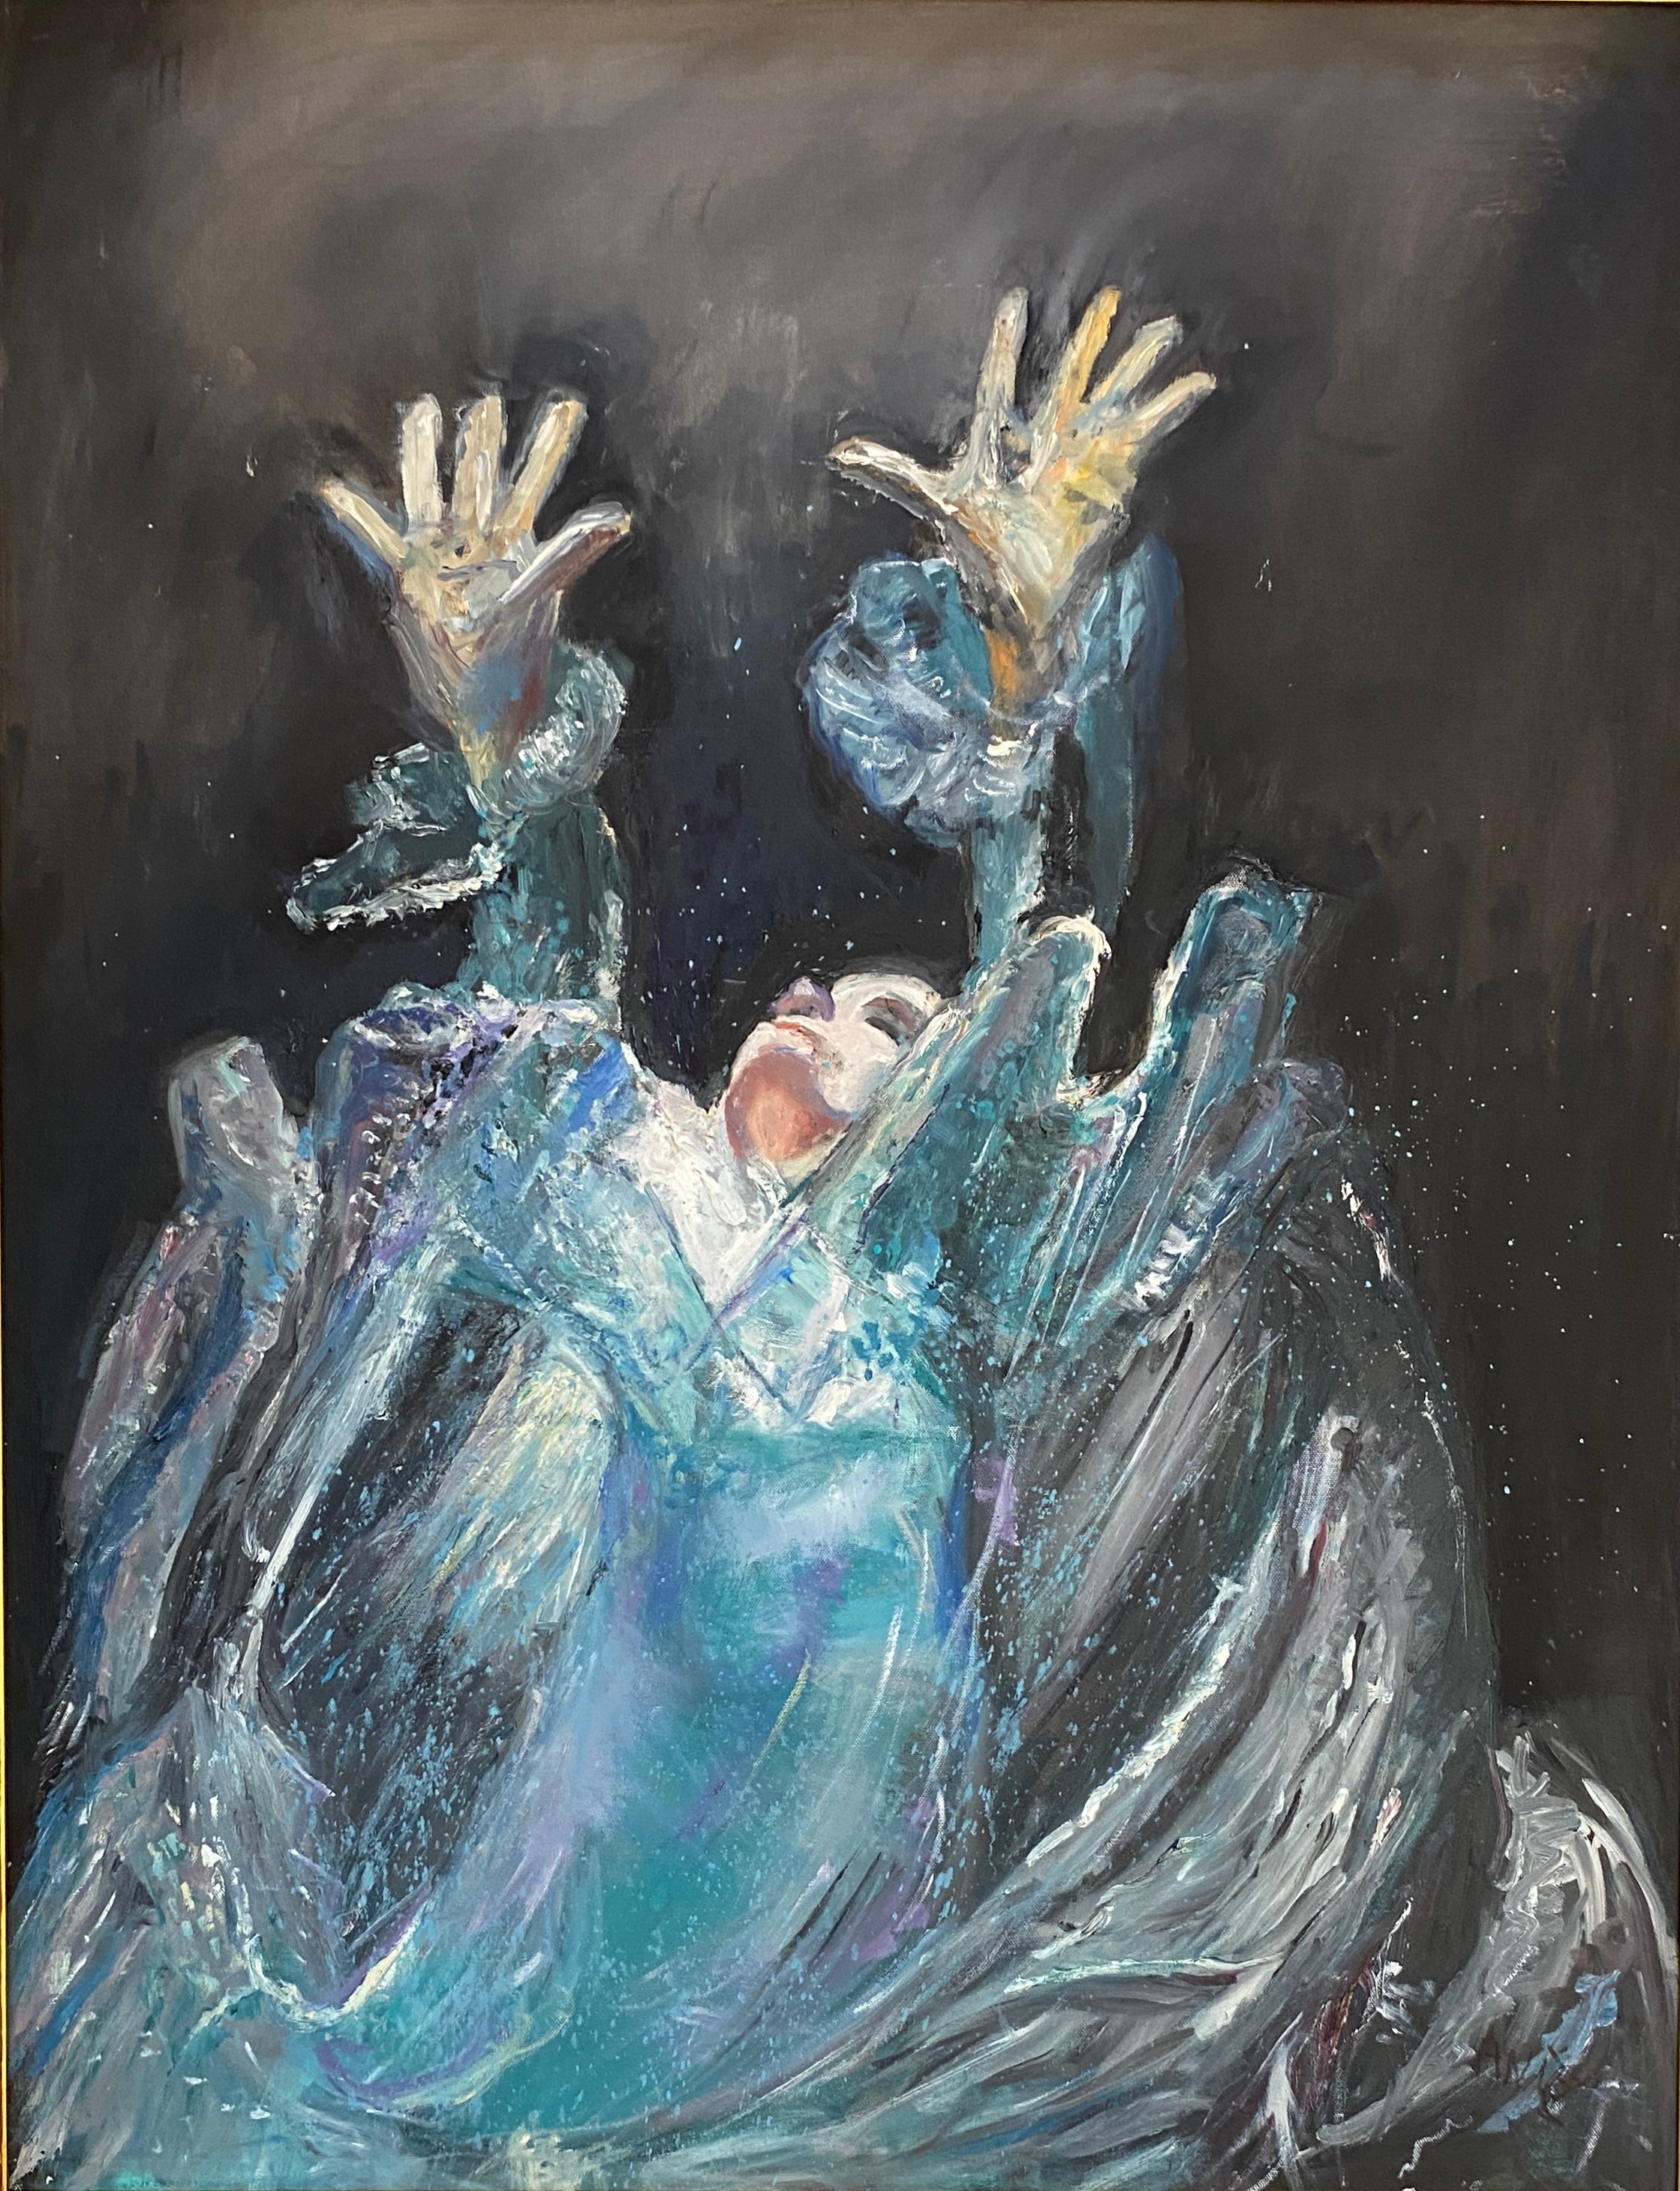 Cette peinture à l'huile évocatrice représente une femme se tenant debout avec défi au milieu d'une mer agitée.  Vêtue de vêtements blancs fluides, elle tend les mains vers le ciel, le visage tourné vers le haut dans un geste d'espoir ou de